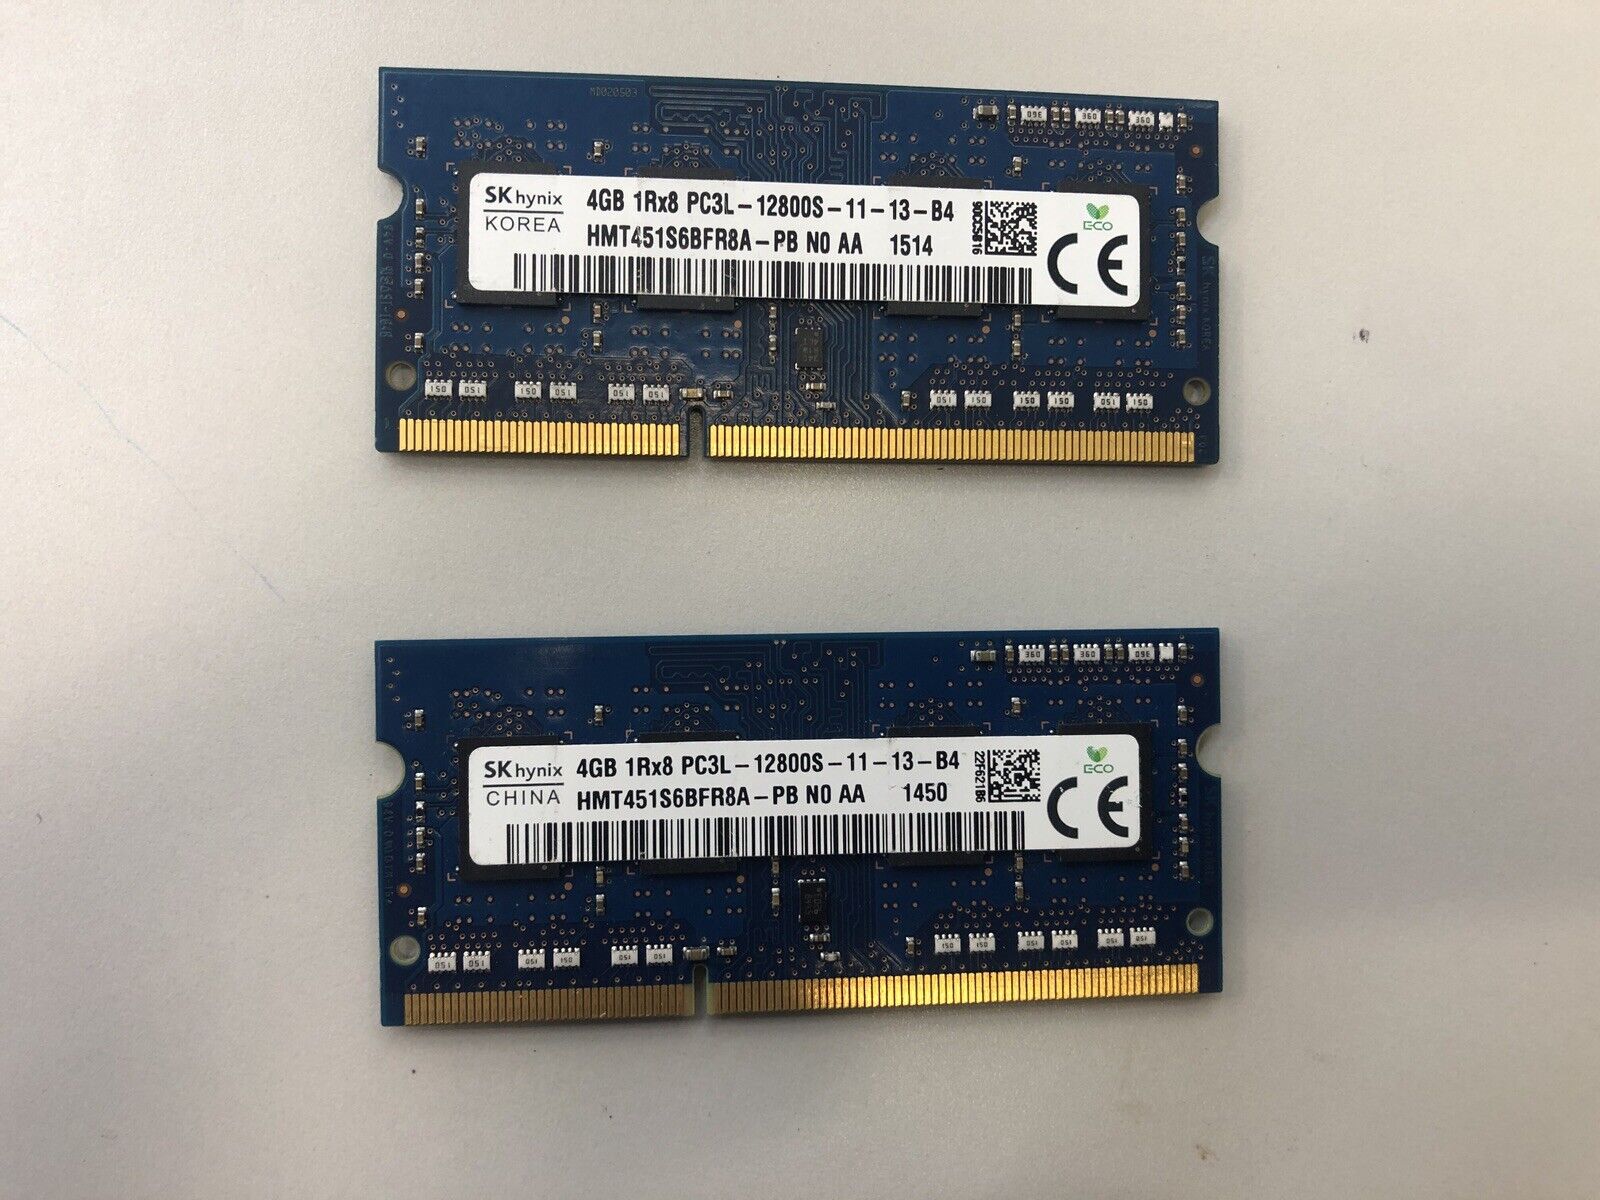 Crucial PC3- Hynix Samsung 12800s  8GB 2x4GB SO-DIMM 1333 MHz DDR3 SDRAM Memory